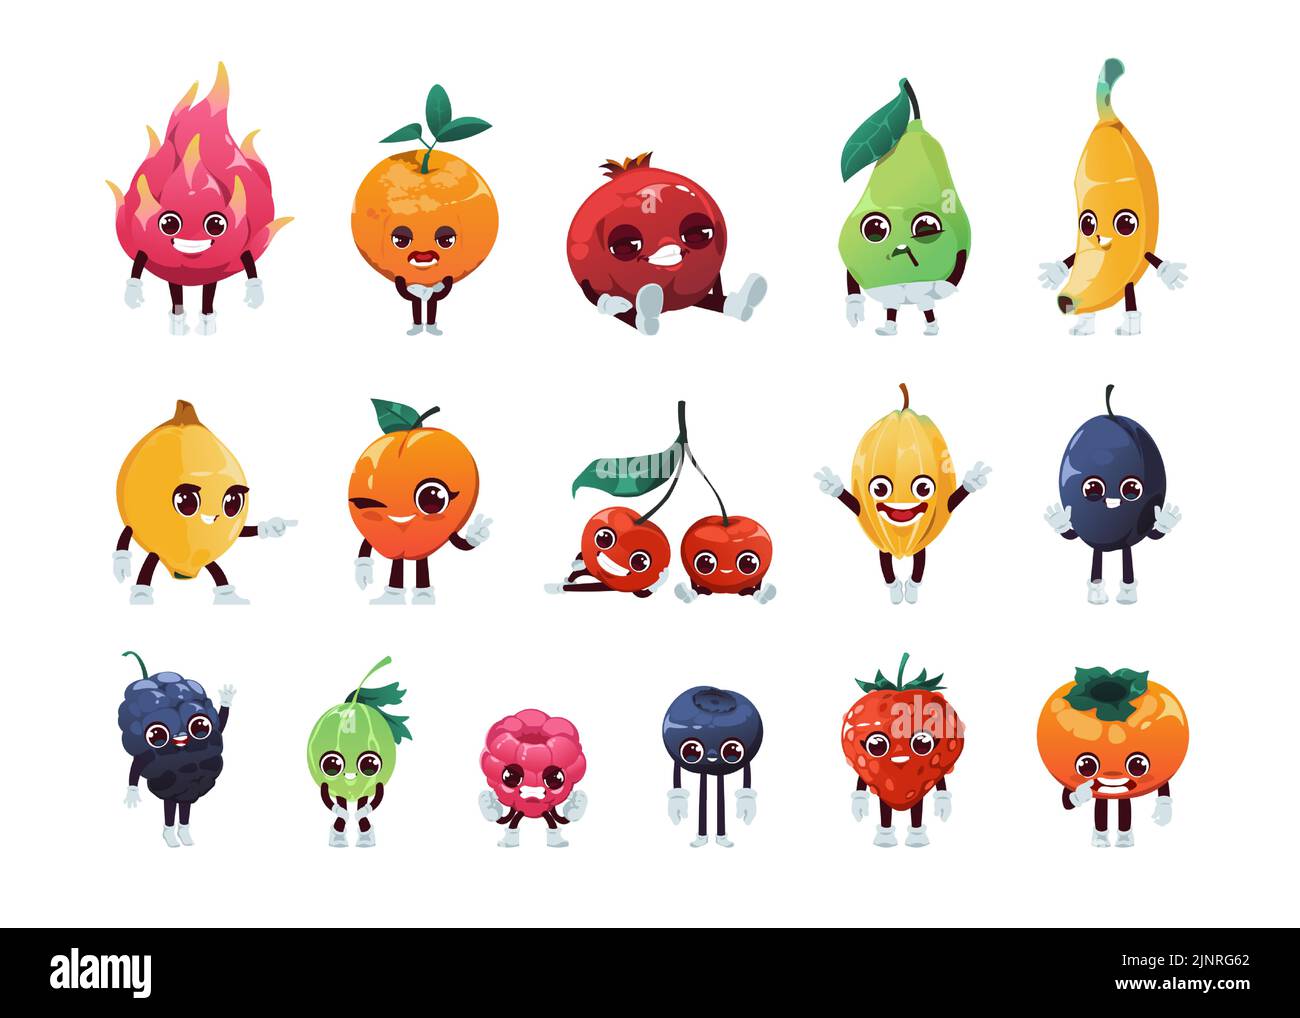 Google Doodle Fruit Games on Behance